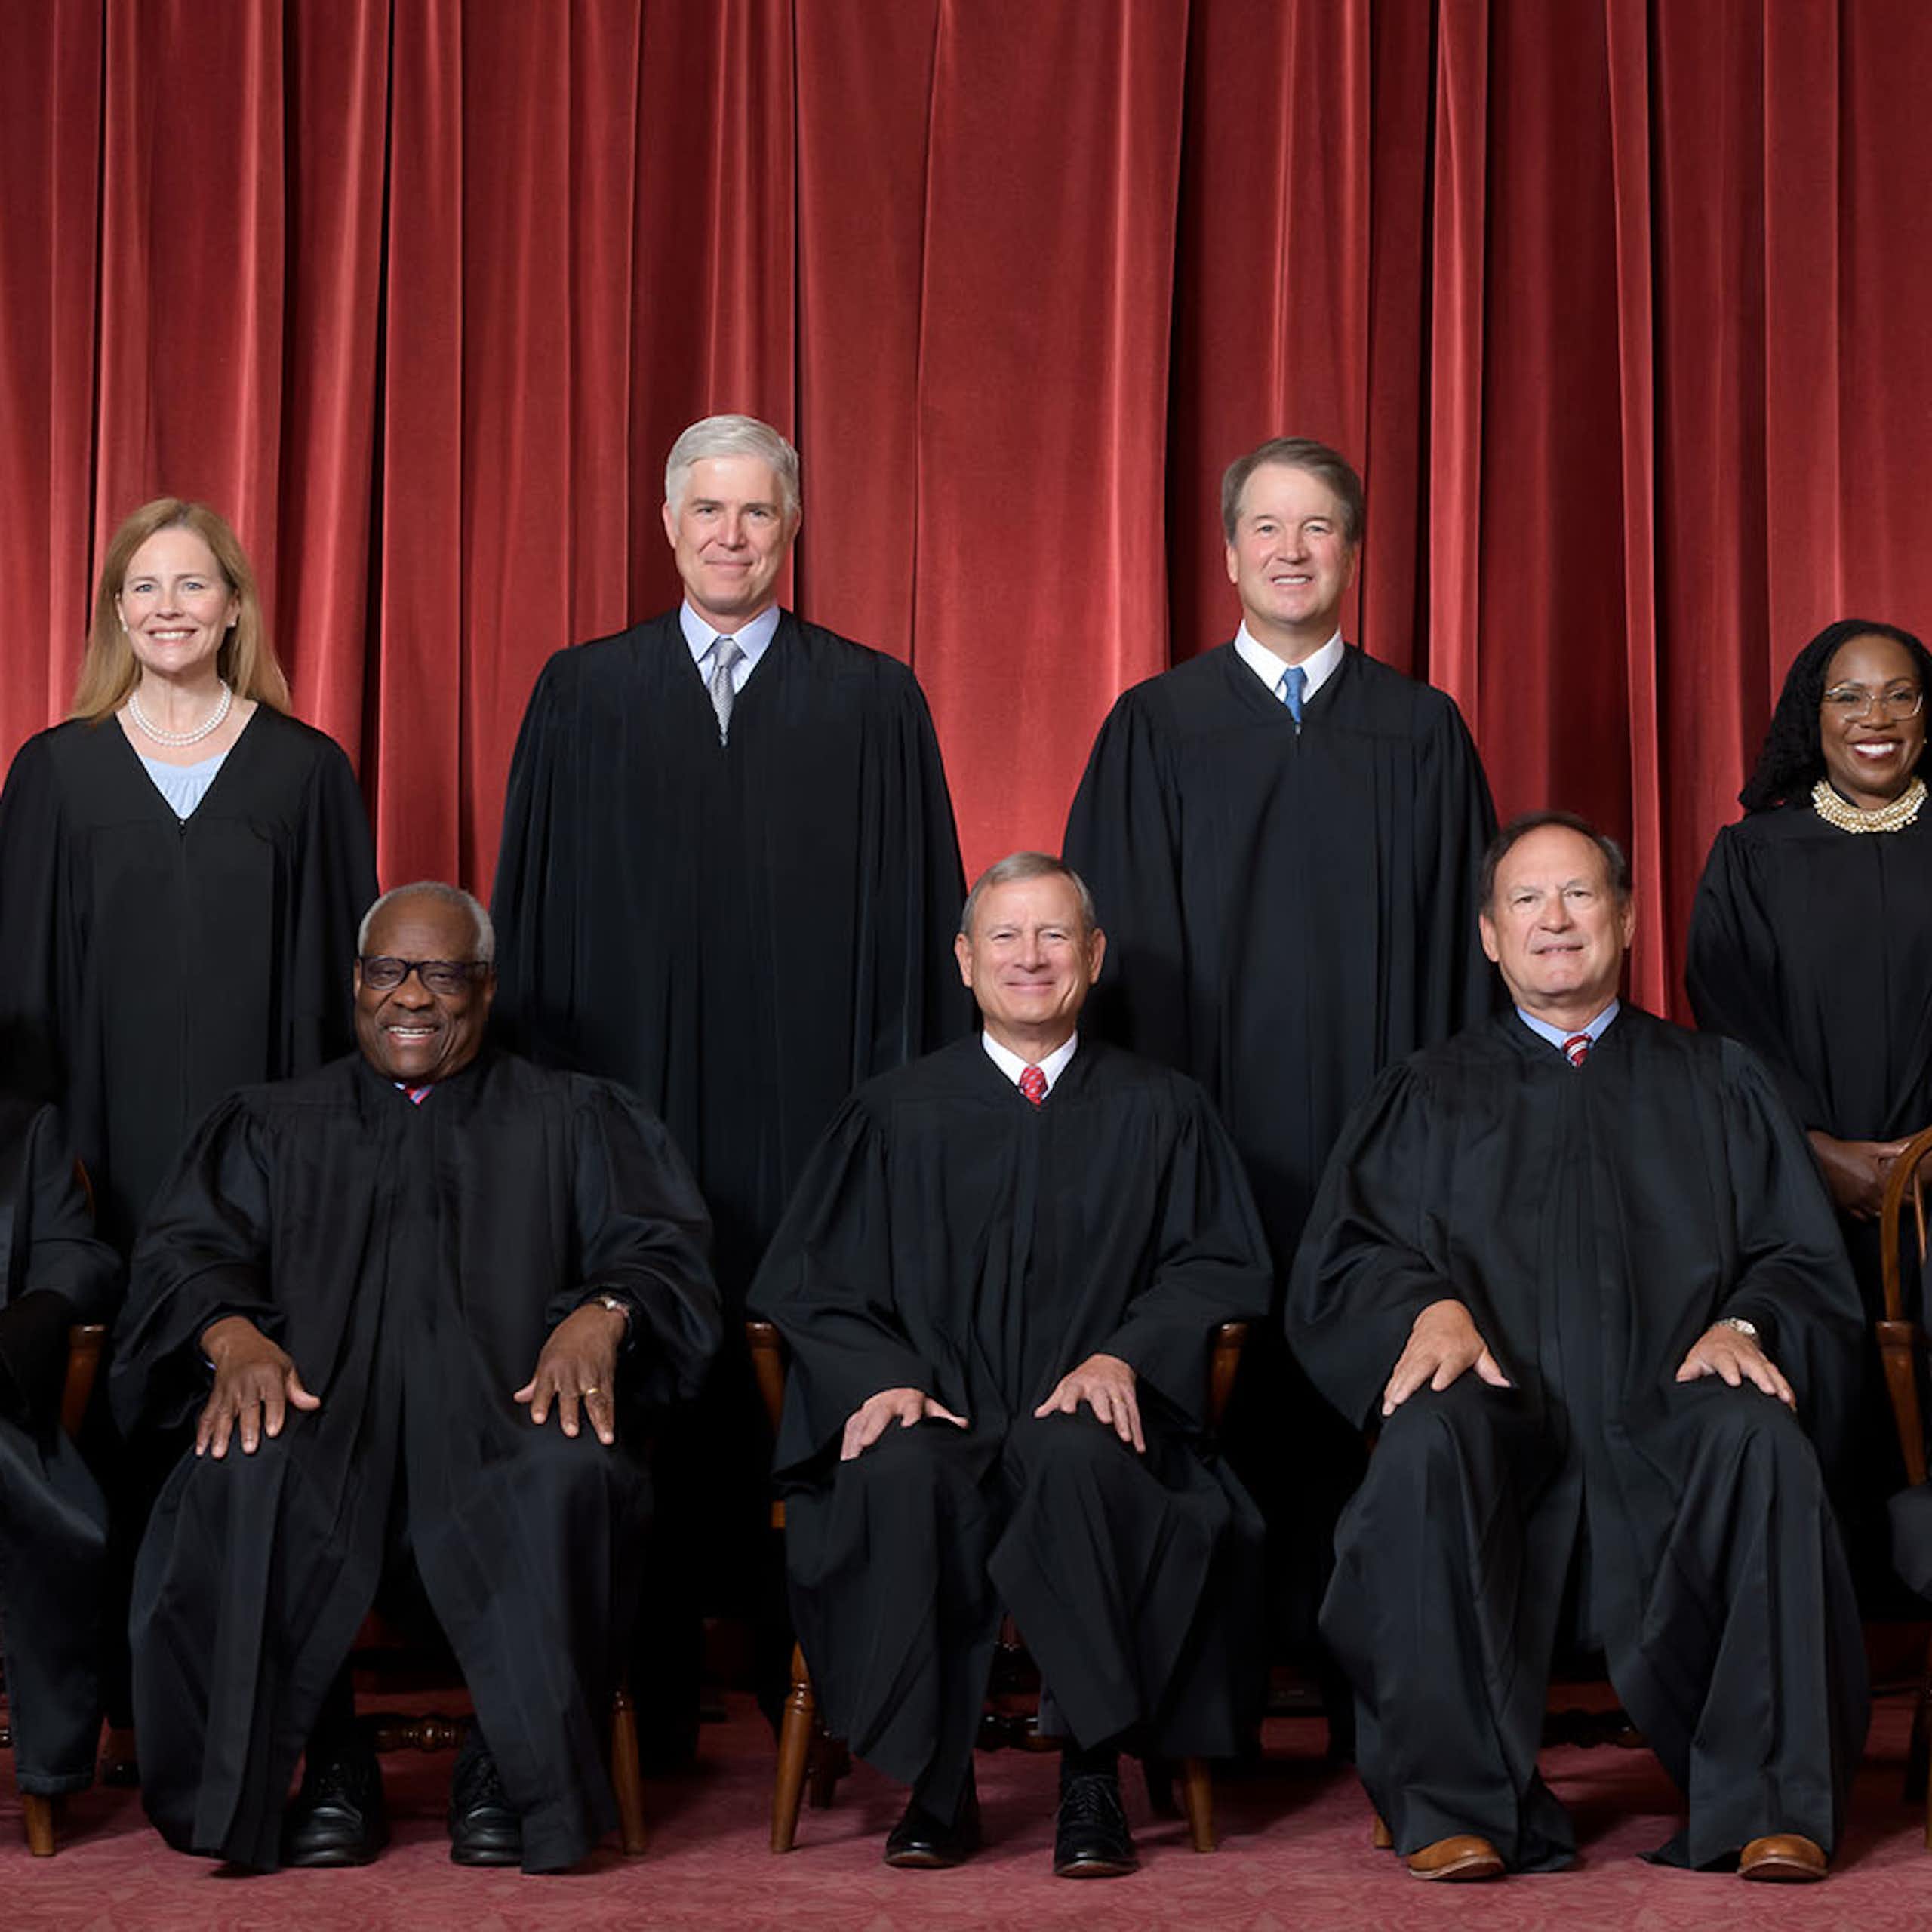 Les neuf juges de la Cour suprême des États-Unis prennent la pose en tenue officielle devant un rideau rouge